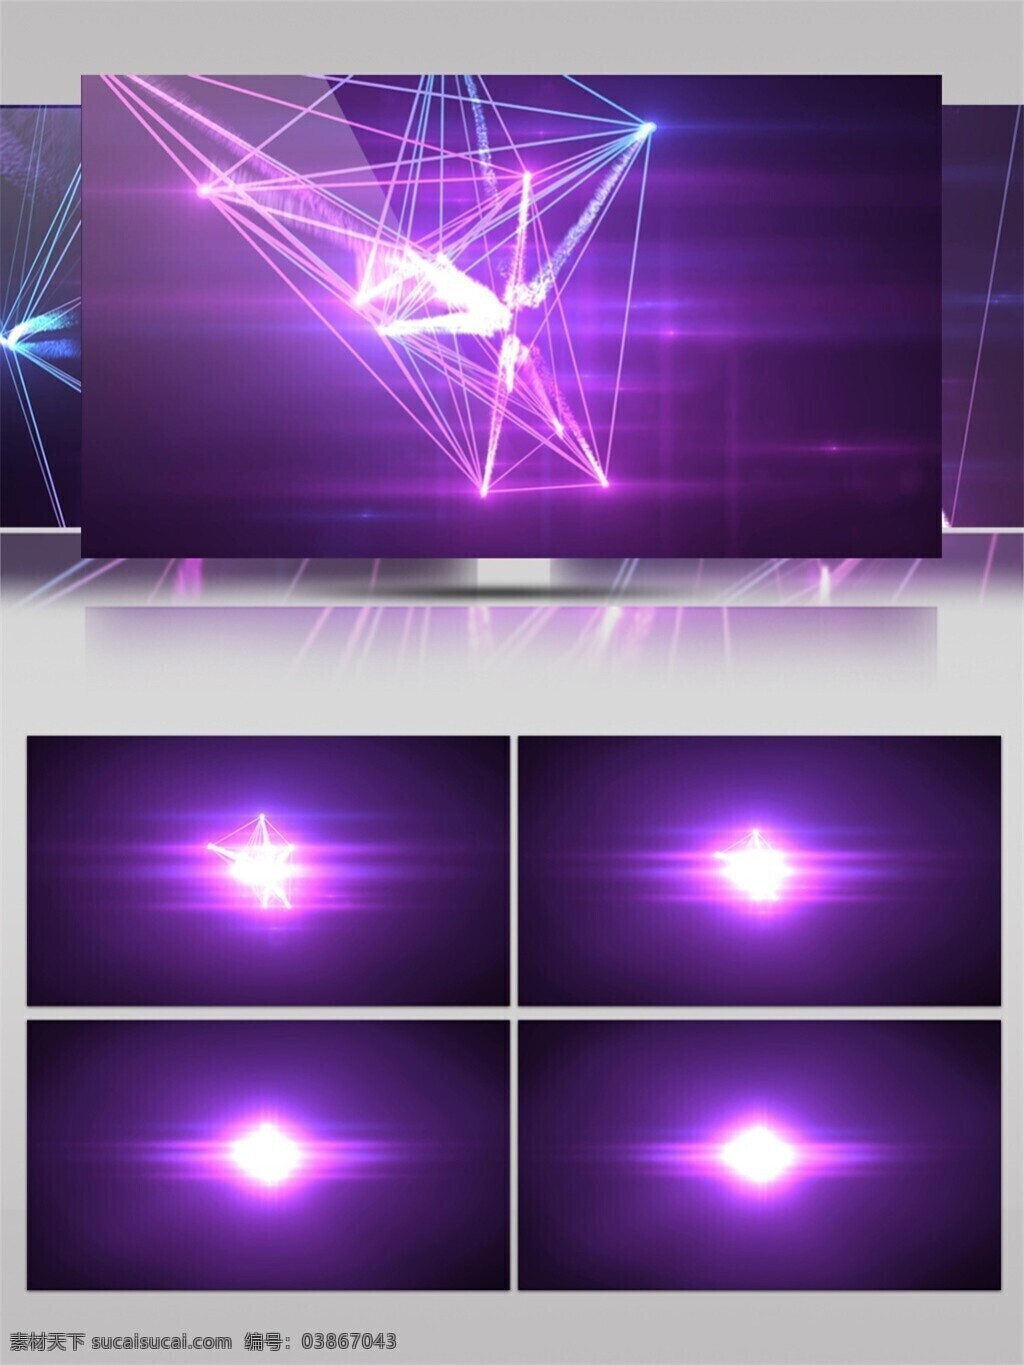 紫色 炫 光 视频 光芒散射 特效视频素材 背景视频素材 炫光